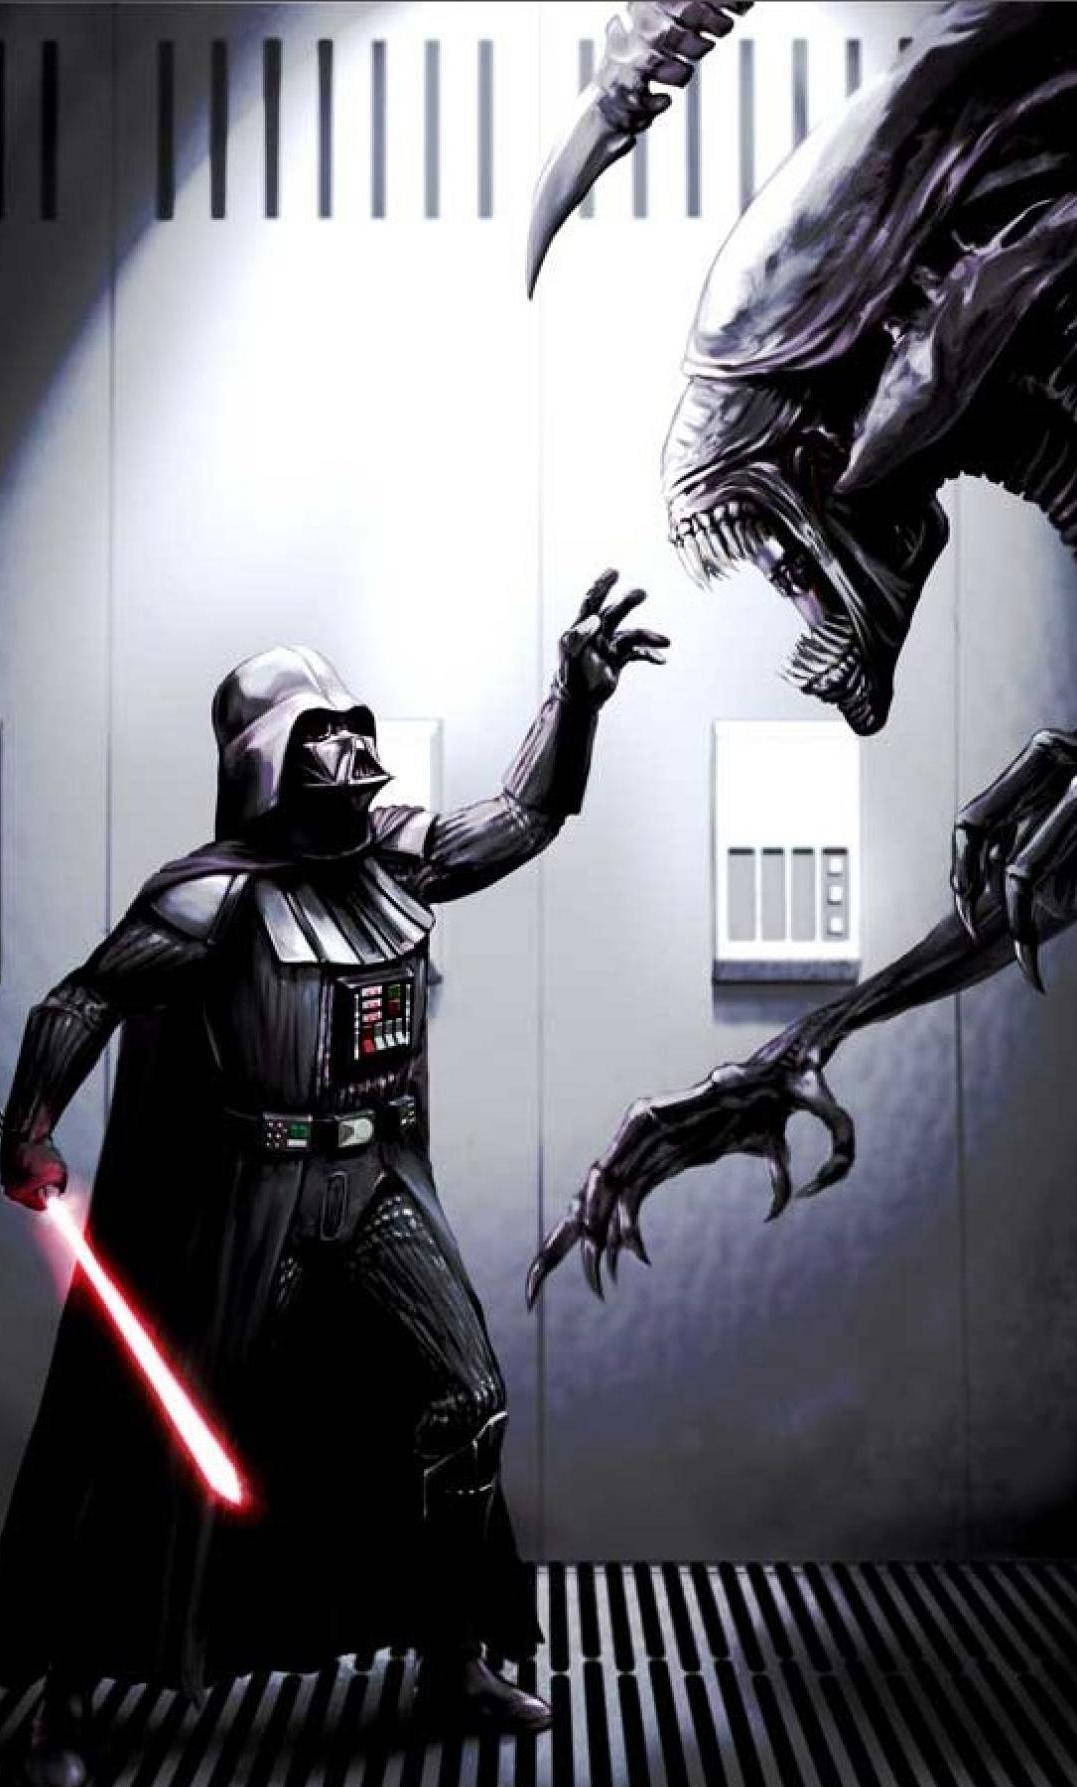 Alien Versus Darth Vader From Star Wars Cell Phone Wallpaper